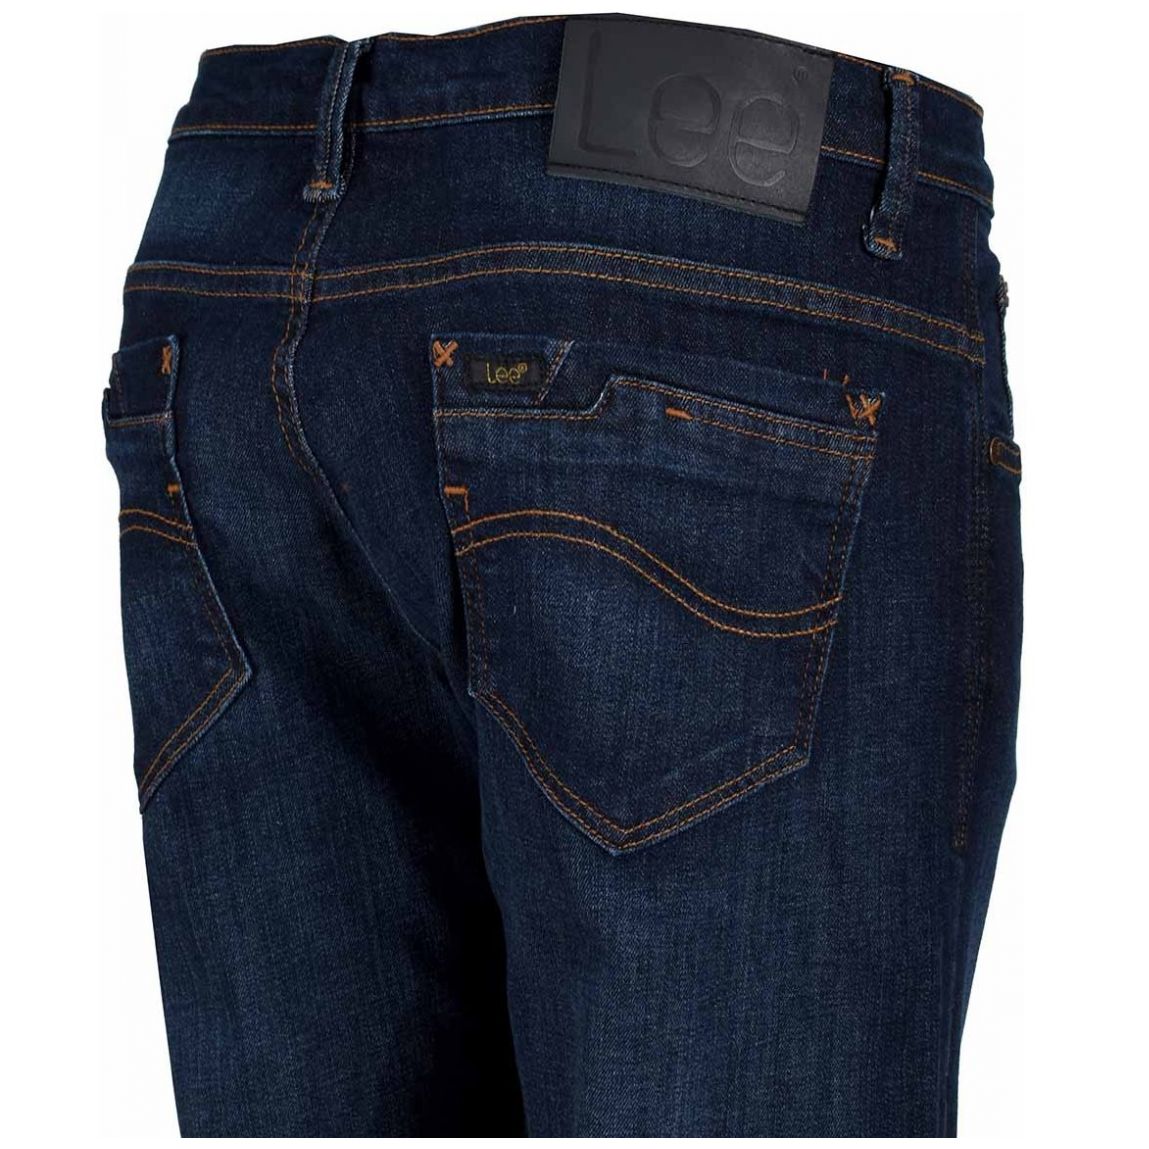 Jeans Skinny Índigo para Hombre Modelo Elo 61119Sc74 Lee